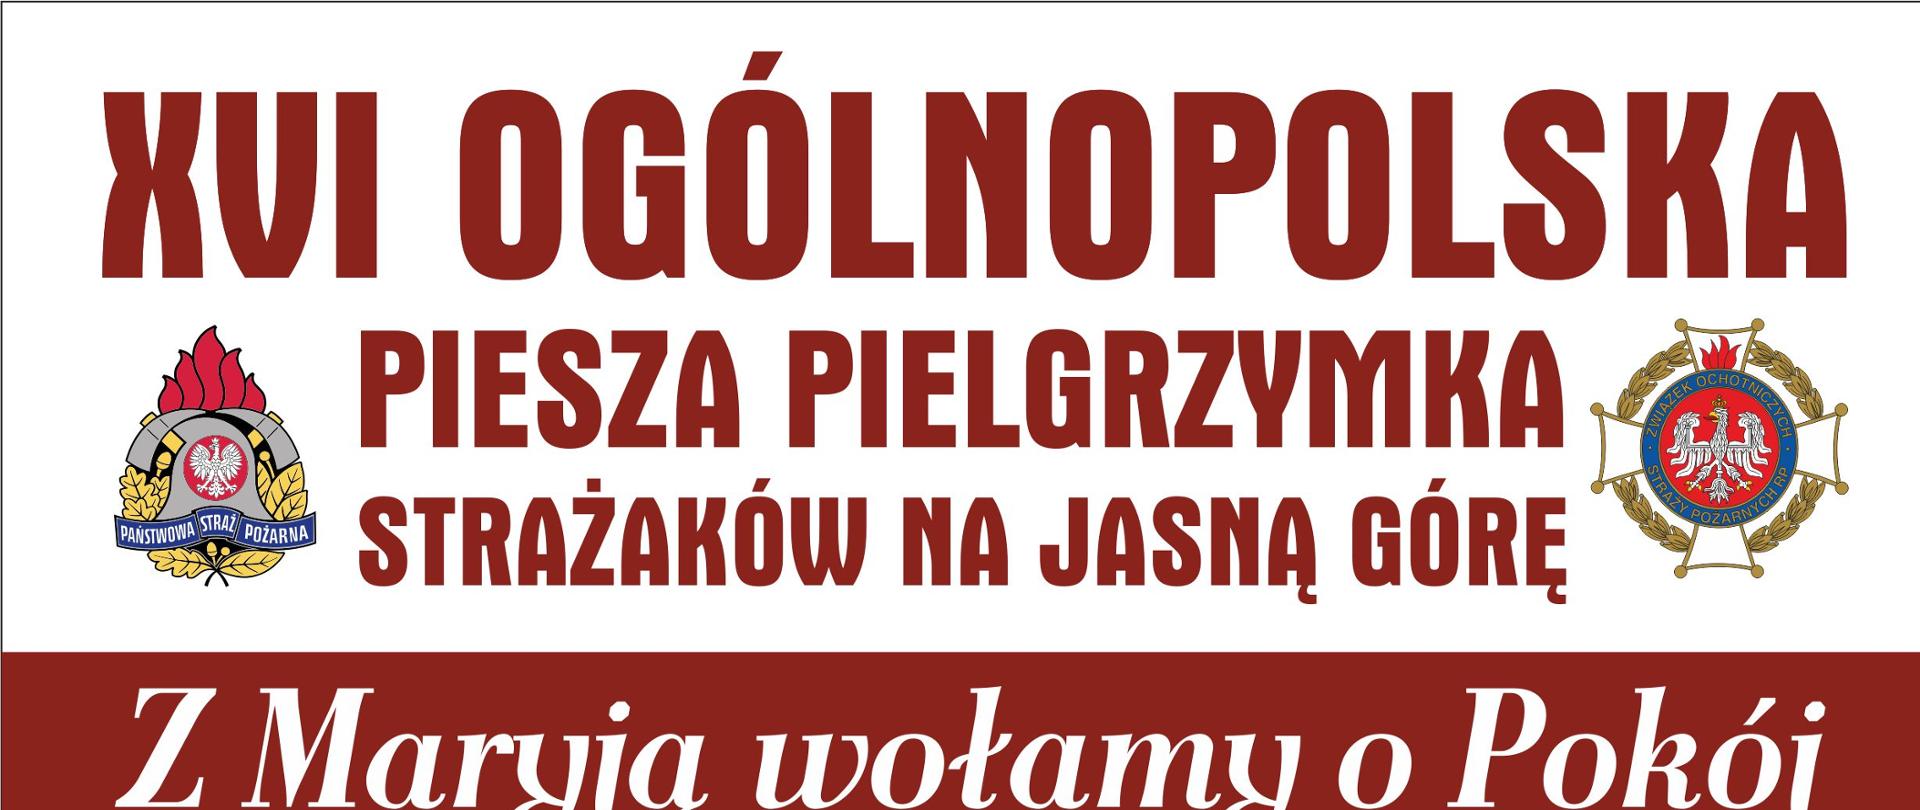 Plakat przedstawia plan XVI Ogólnopolskiej Pieszej Pielgrzymki strażaków w dniach 5-14 sierpnia 2022